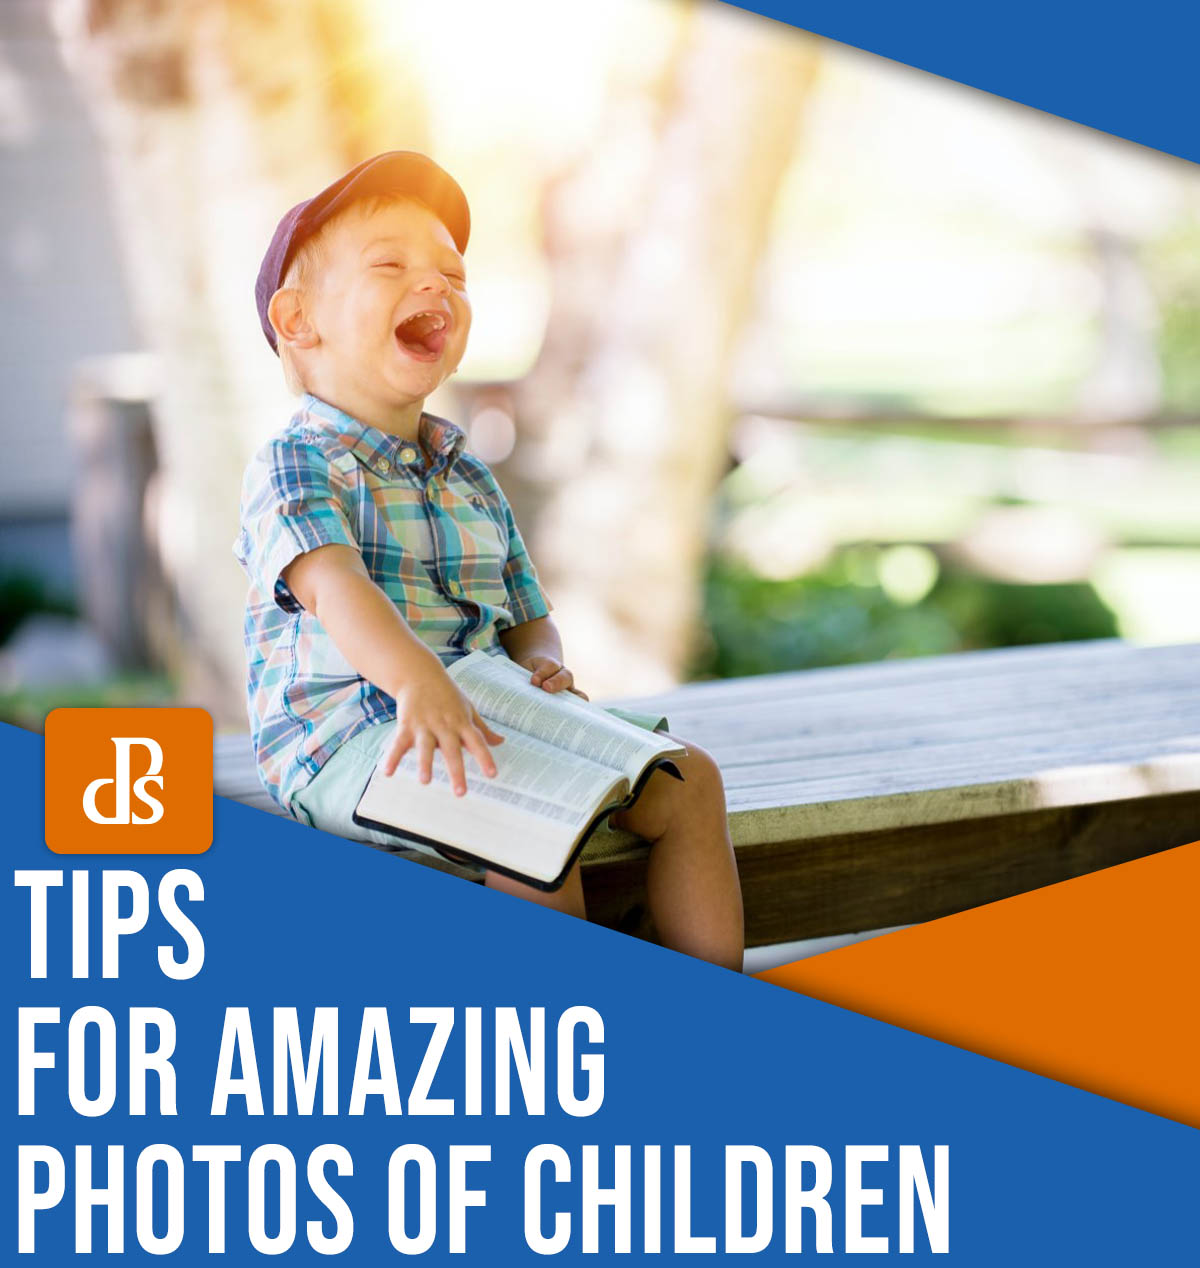 Conseils pour de superbes photos d'enfants